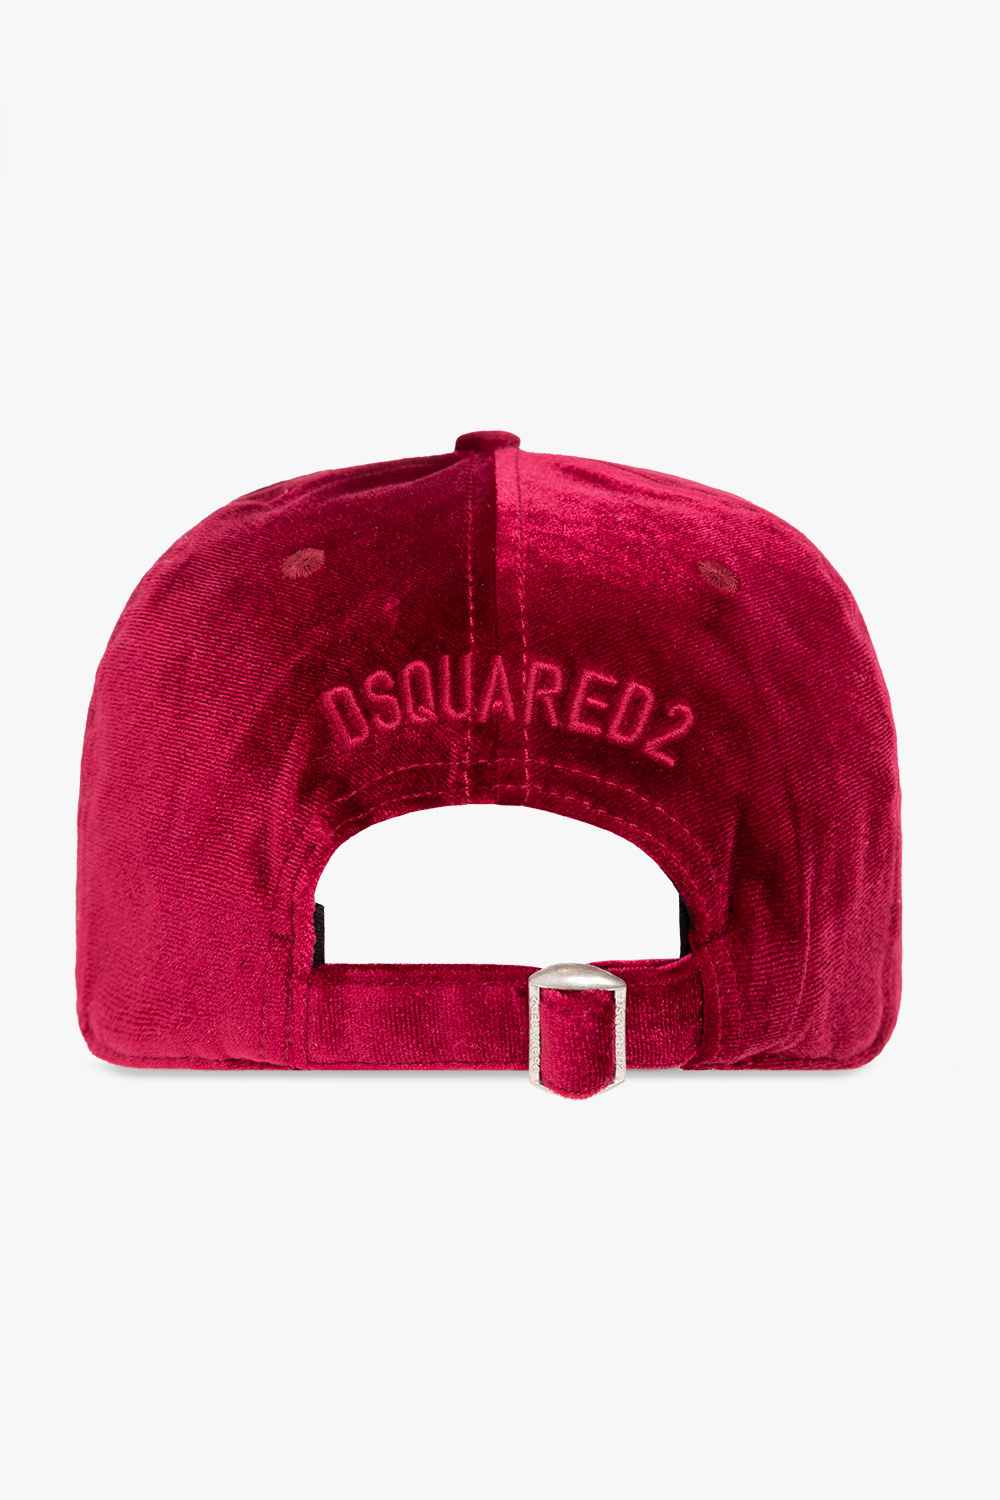 Dsquared2 new era camper dg micro fleece unisex cap